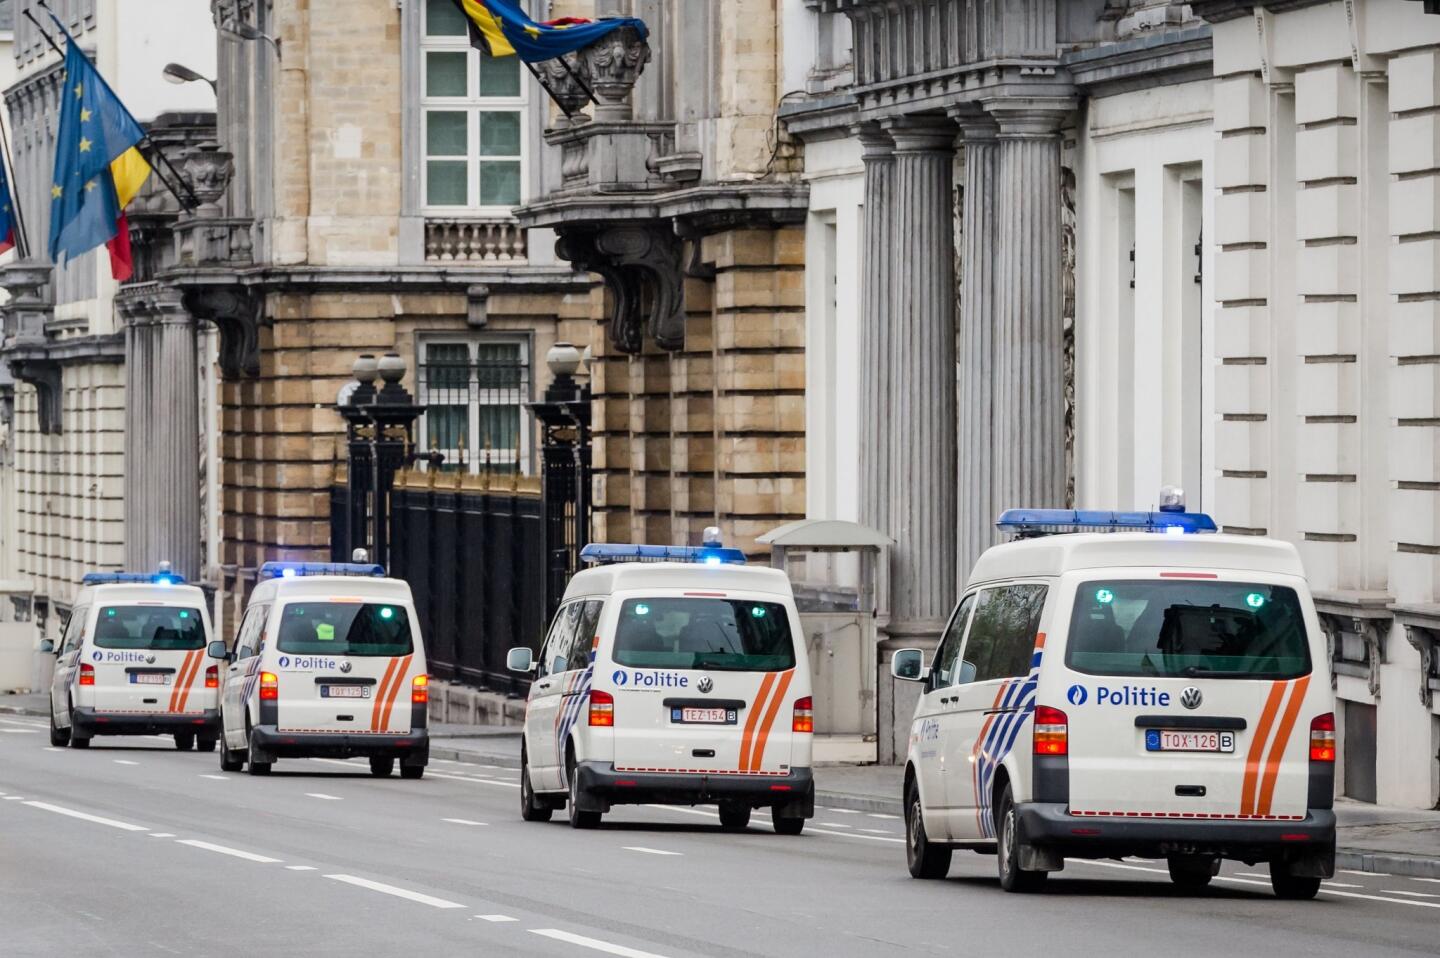 Belgium terror alert